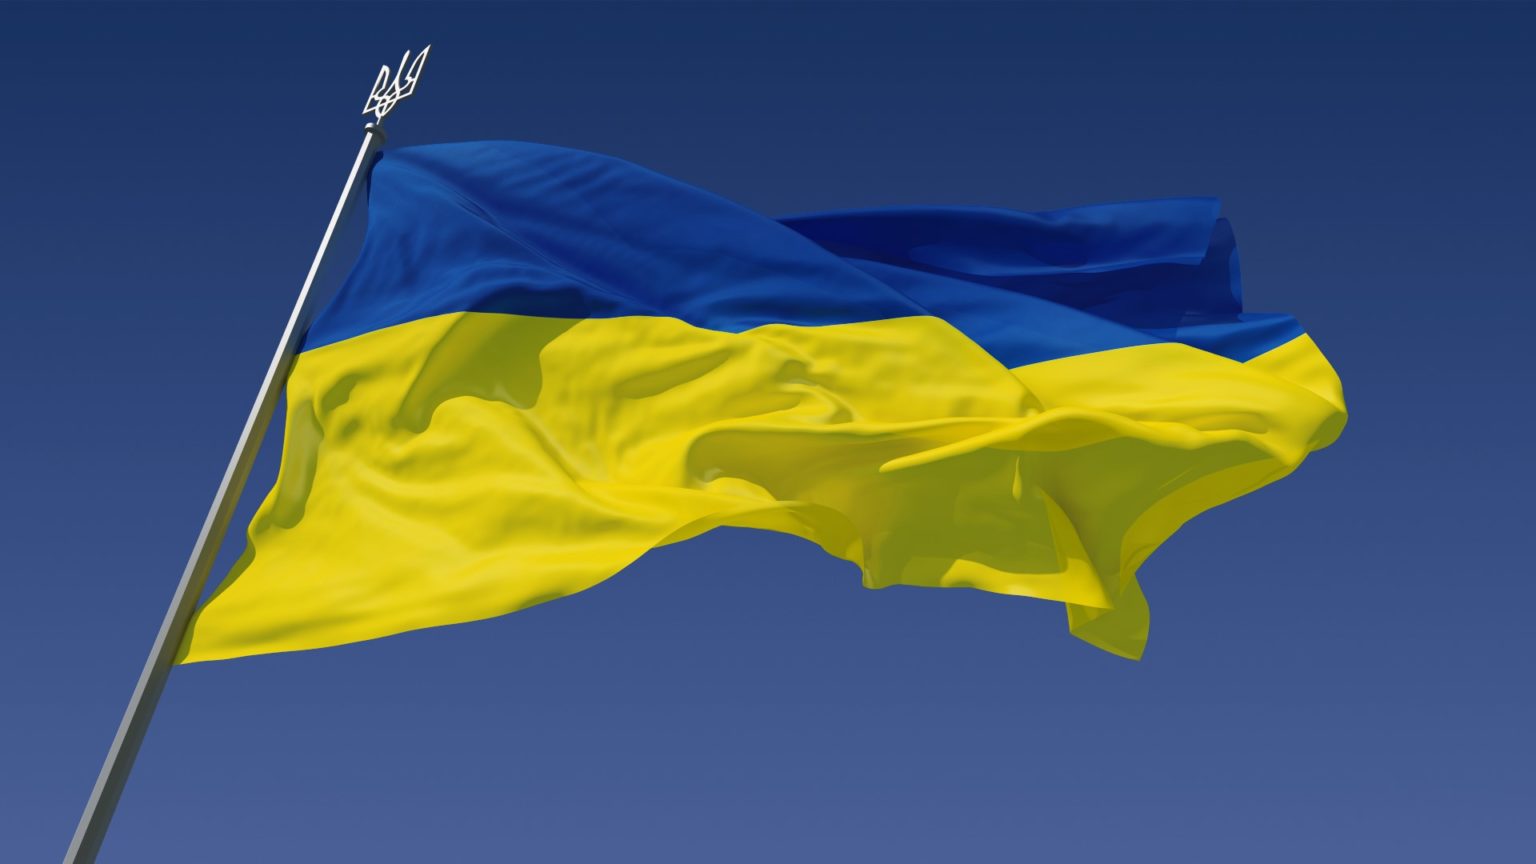 Ukraina sprzedaje NFT, aby zebrać pieniądze podczas rosyjskiej okupacji